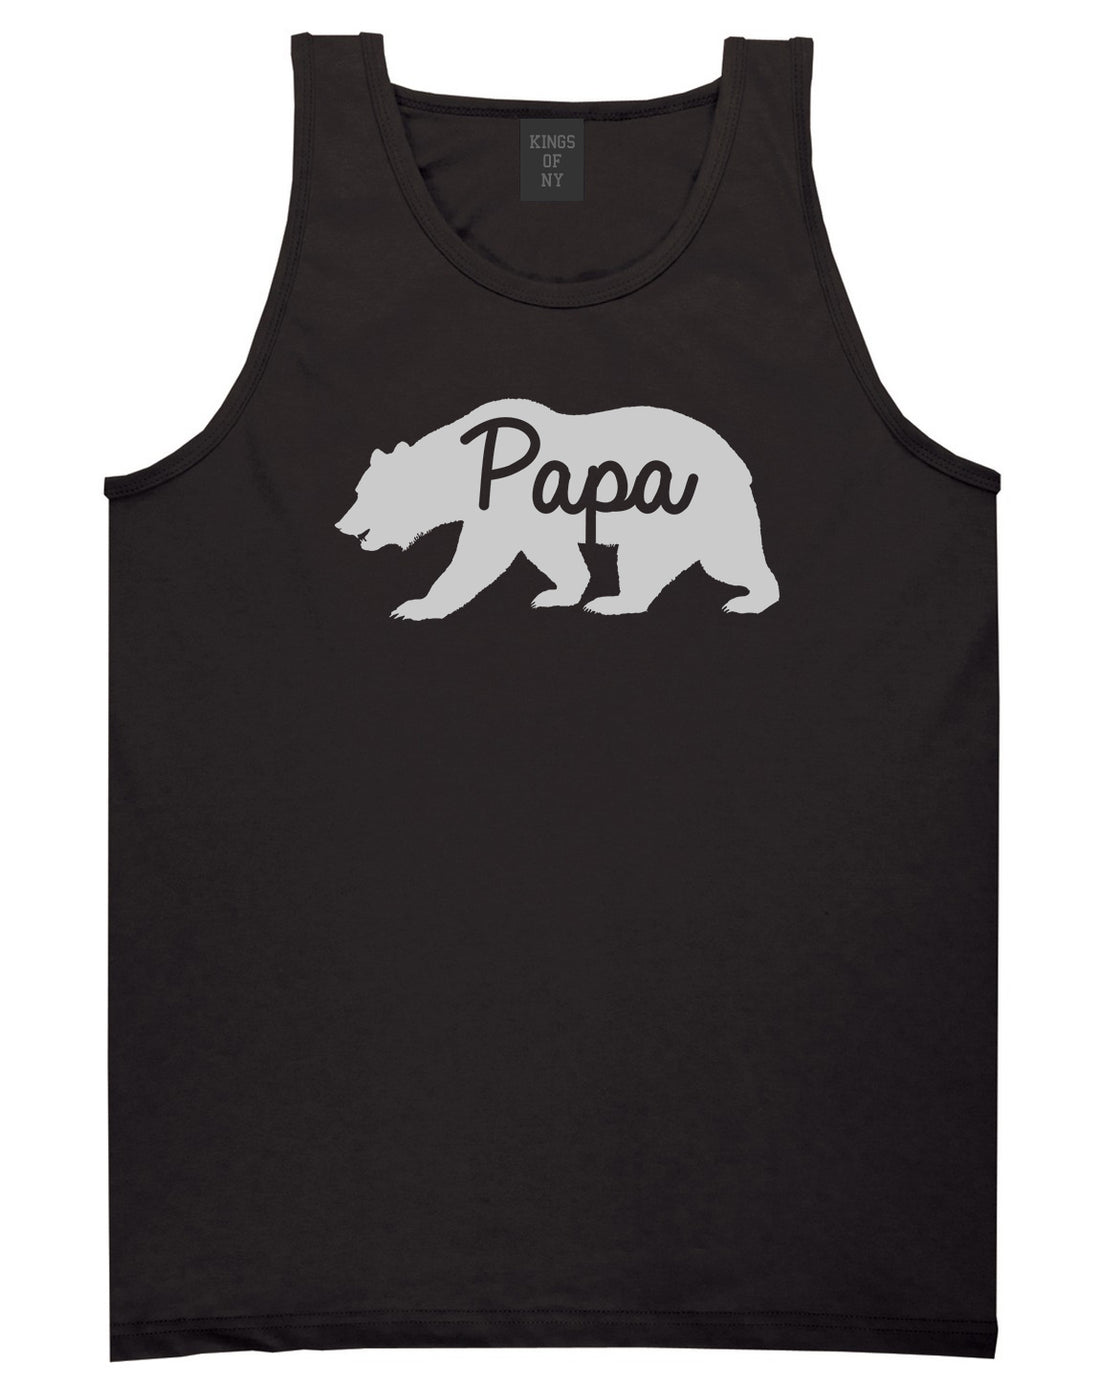 Papa Bear Mens Tank Top Shirt Black by Kings Of NY